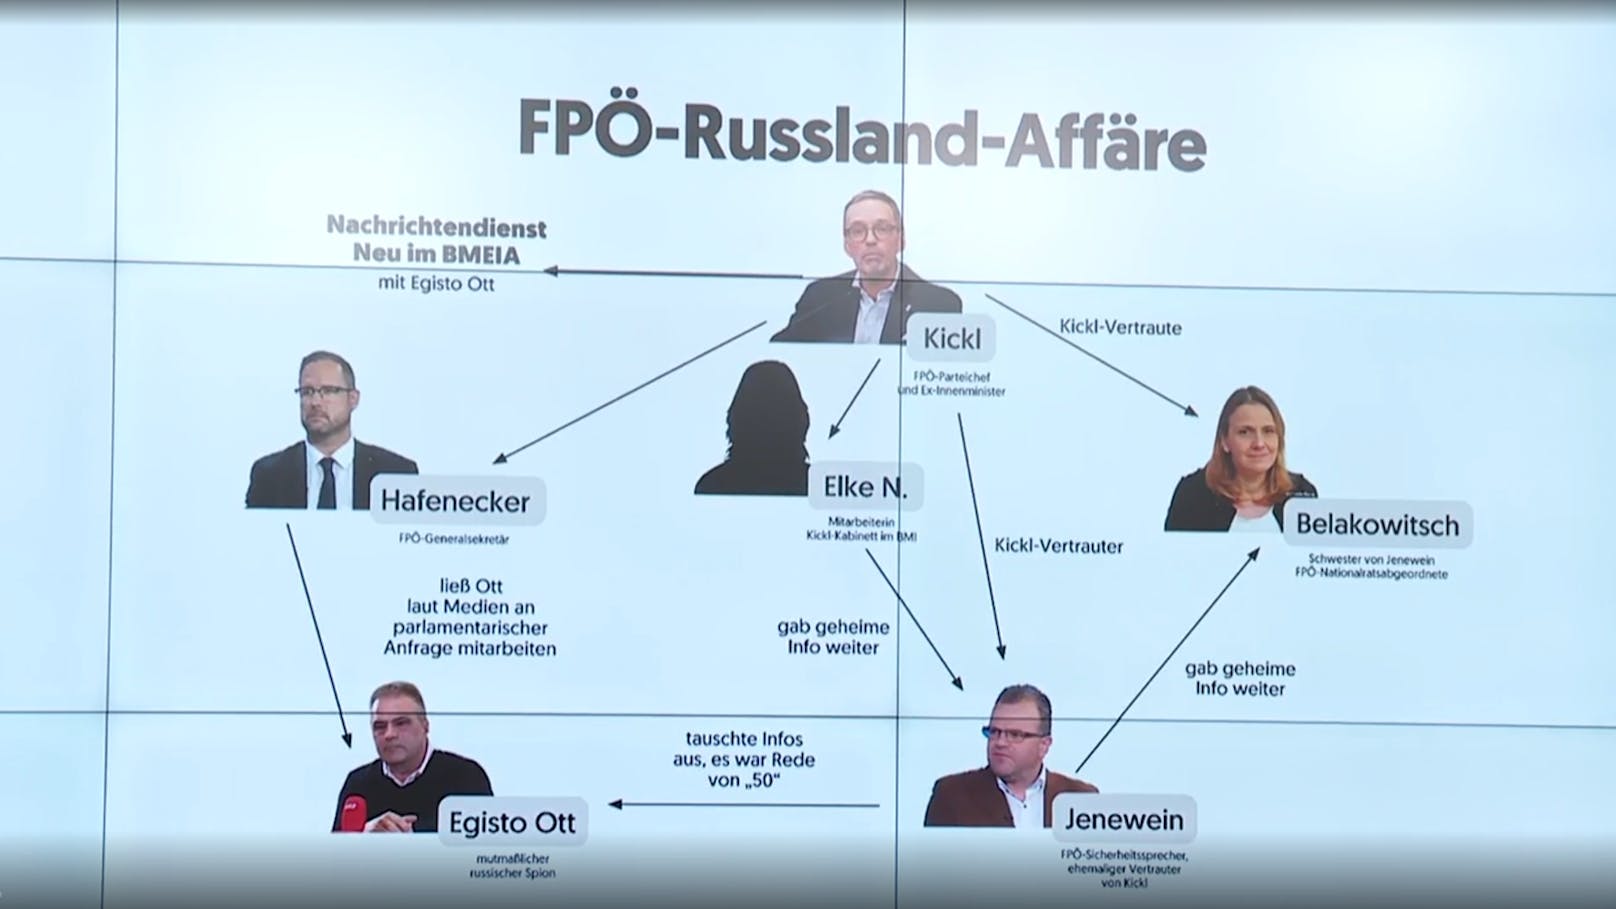 Stocker zeigte auch in der Plenarsitzung das Bild des FPÖ-Netzwerkes aus der Pressekonferenz: "FPÖ-Russland-Affäre".